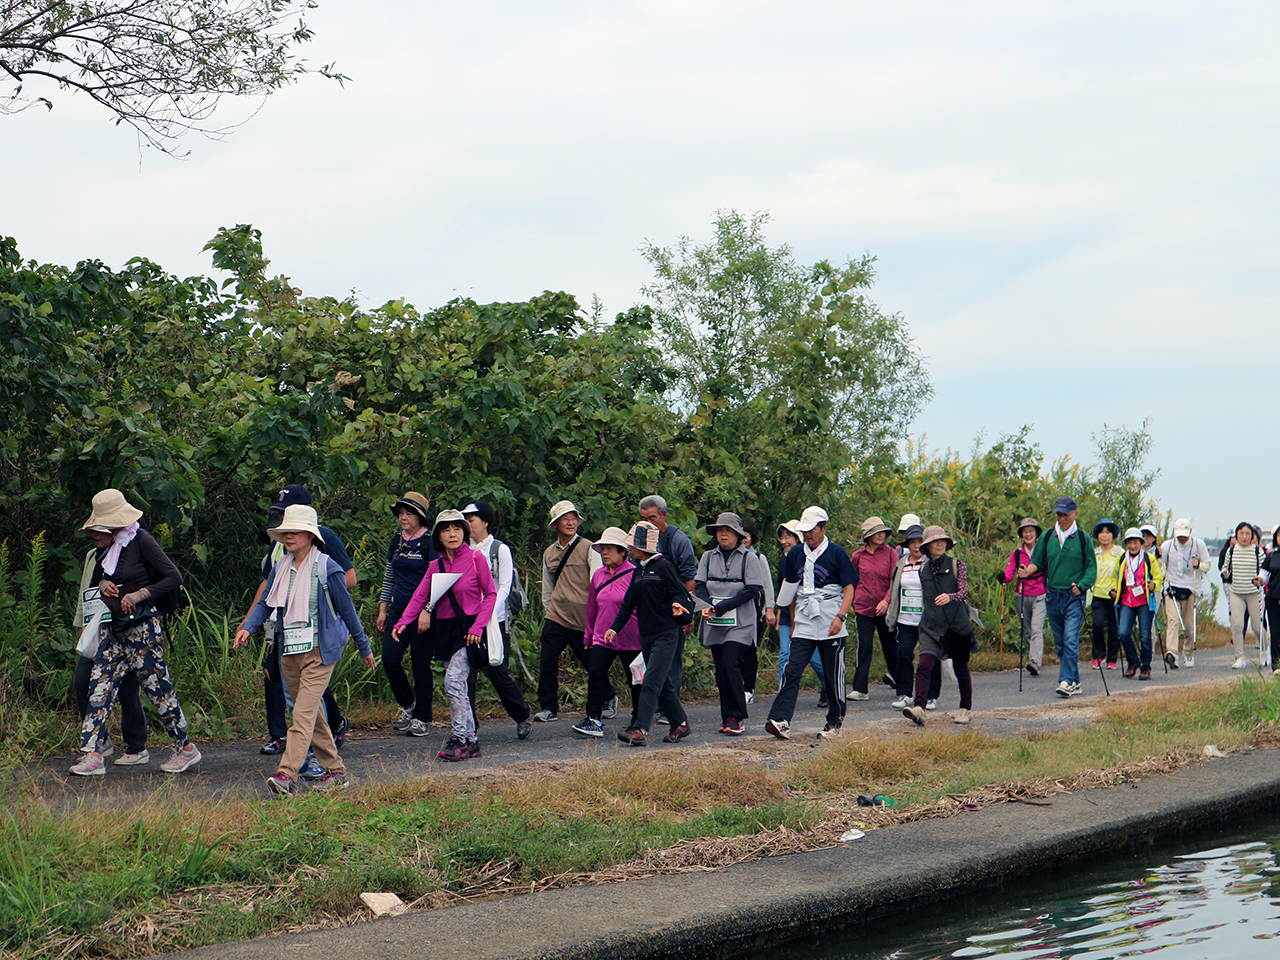 ‘월드 워크 페스타 in 돗토리’ 참가자들이 워크 코스를 걷고 있다. 